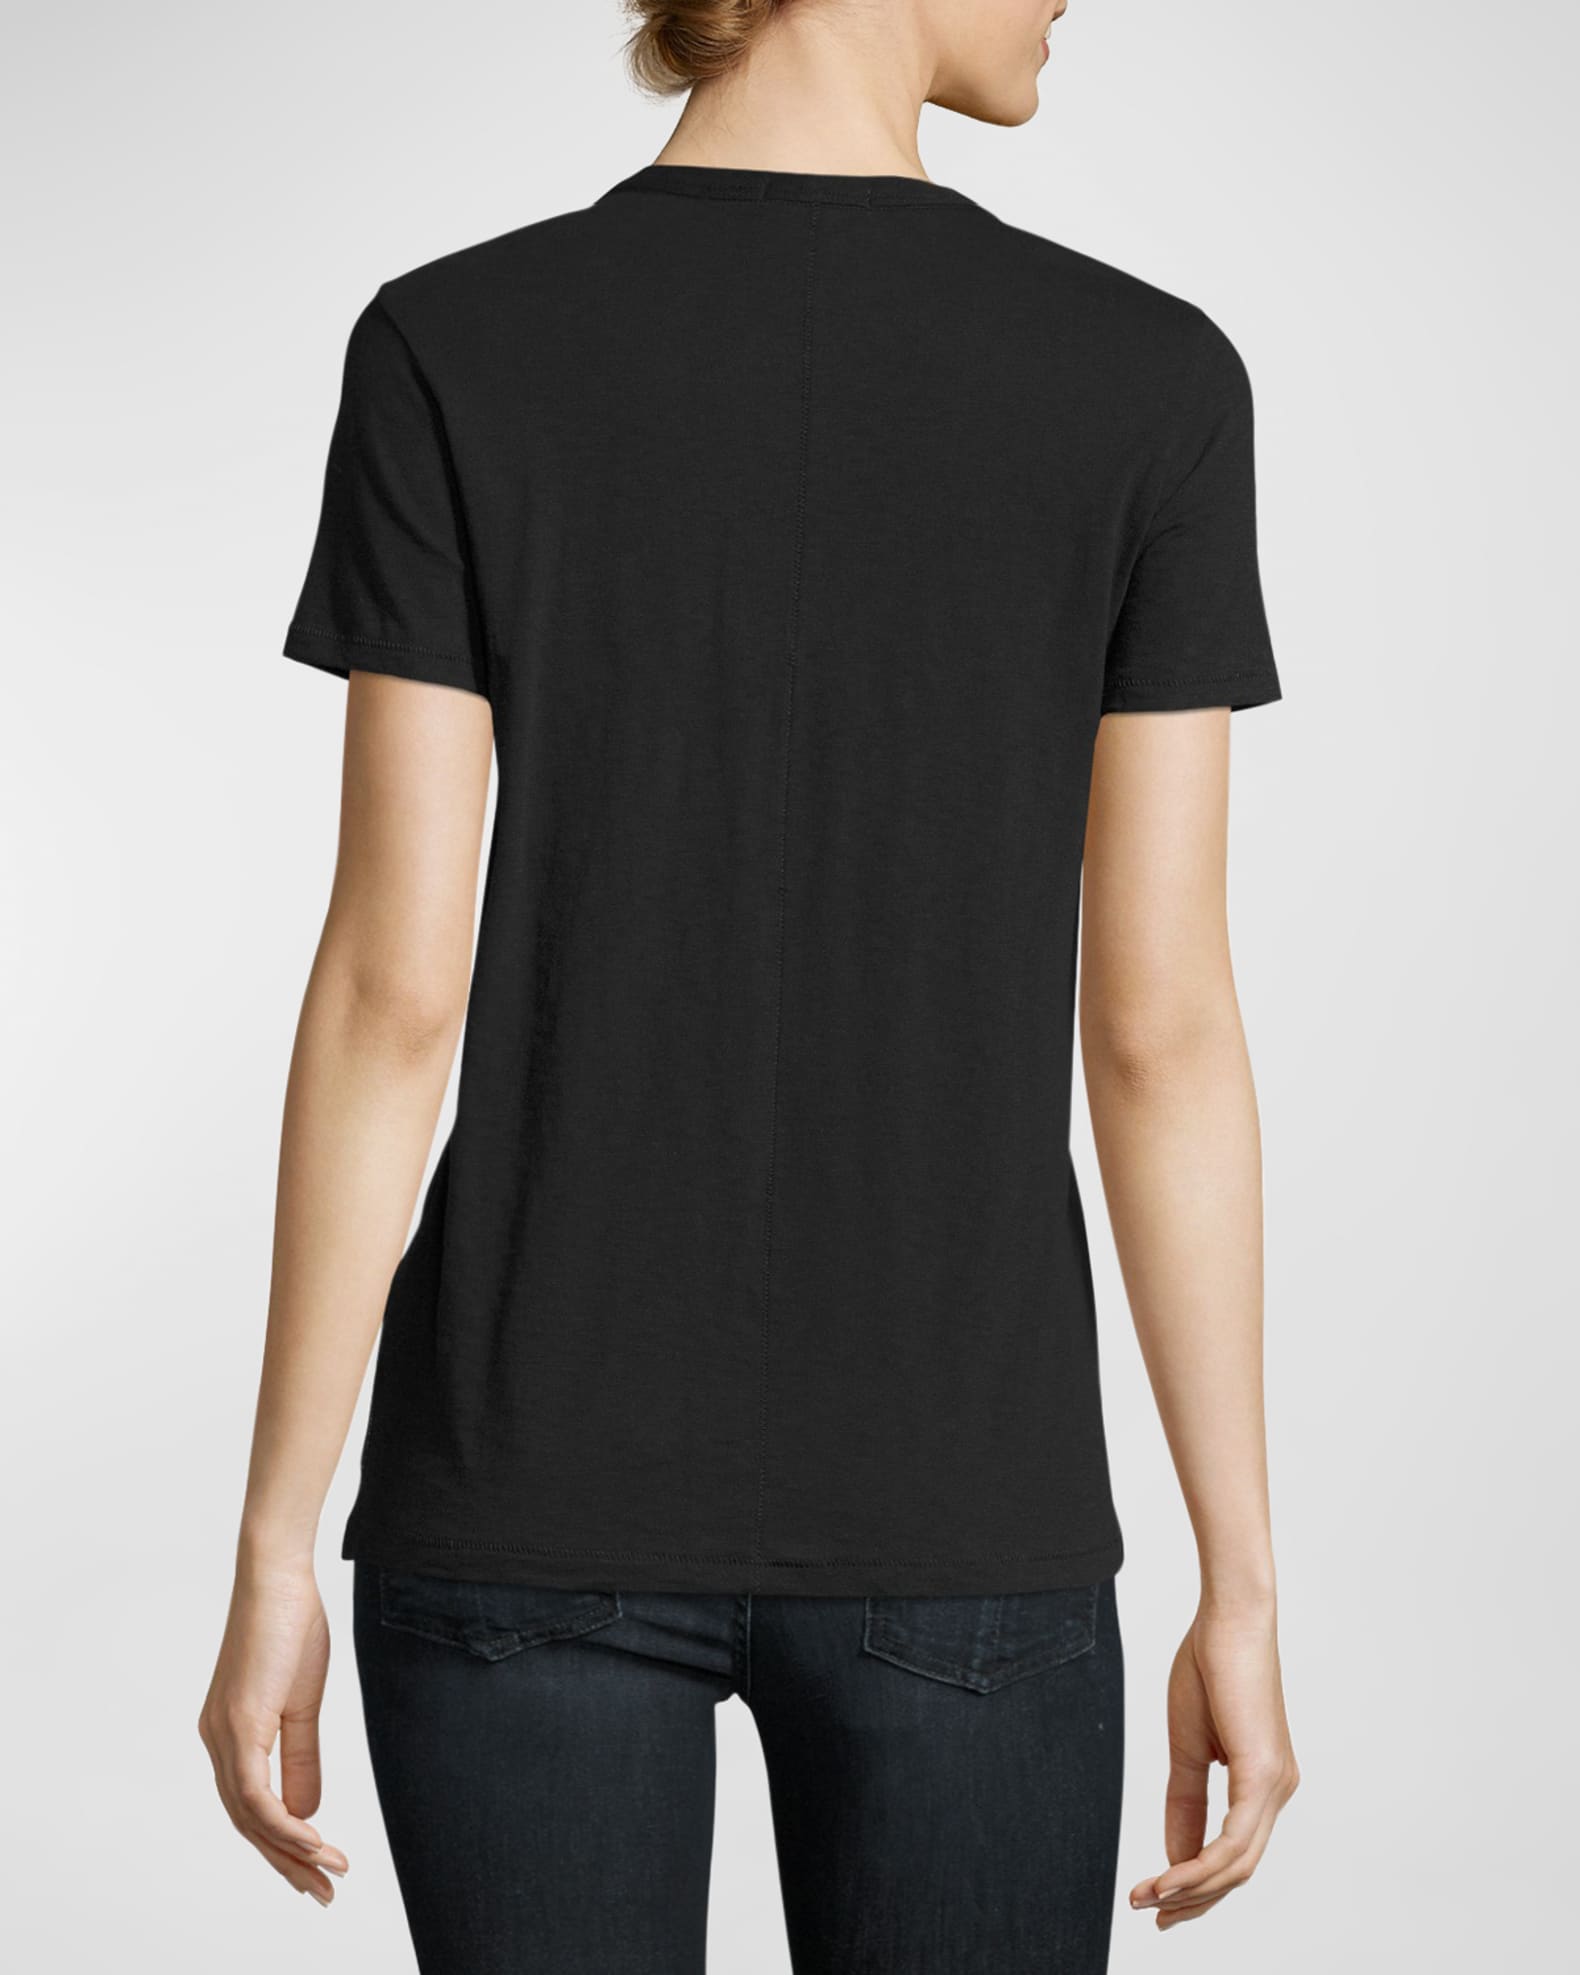 Rag & Bone The Vee Basic T-Shirt | Neiman Marcus